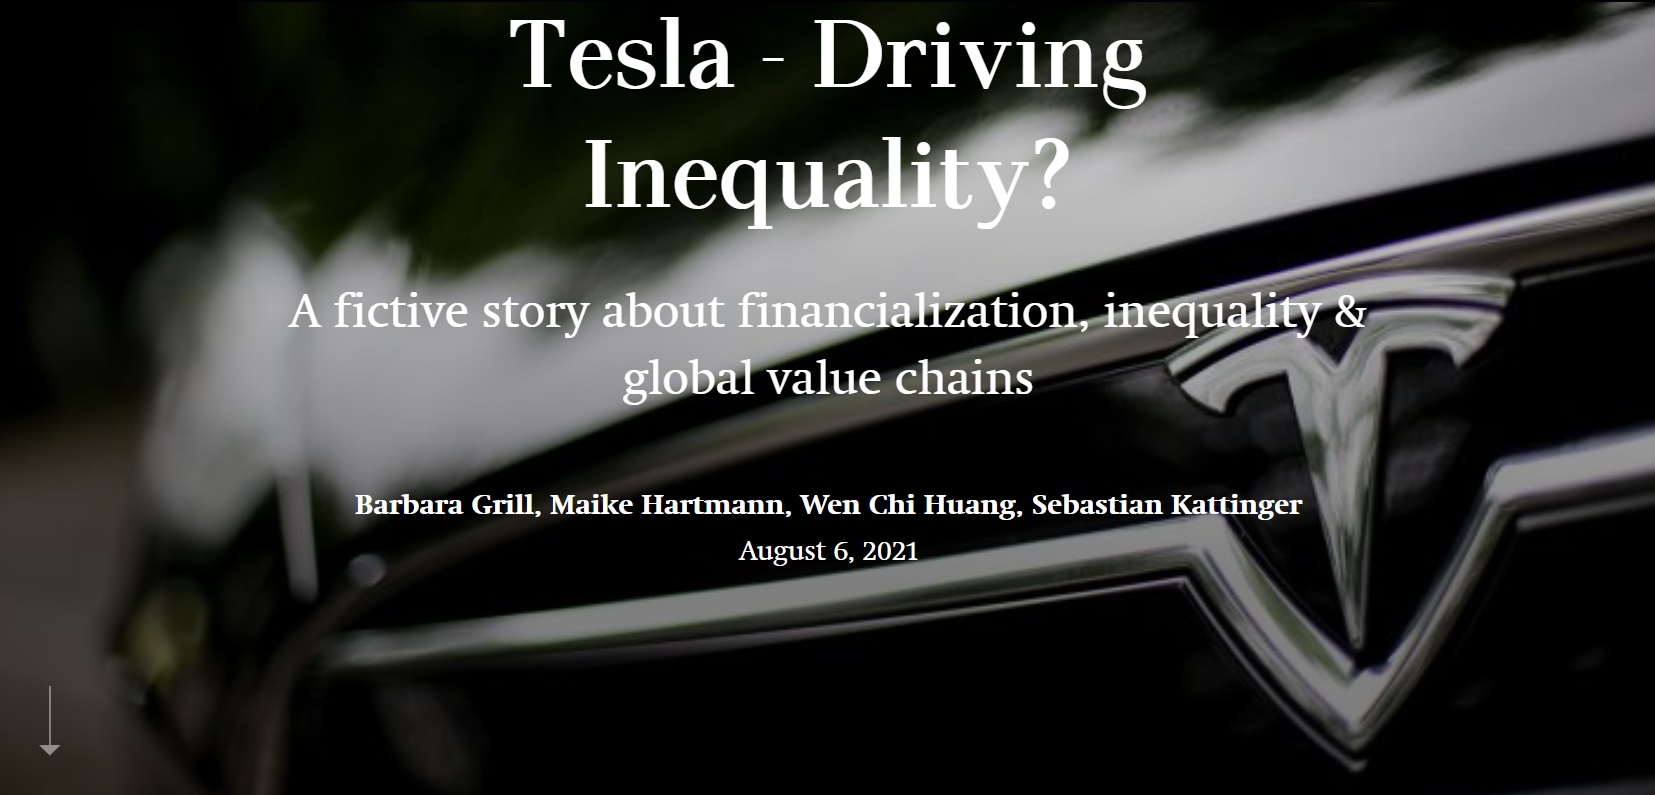 Tesla - driving inequality?